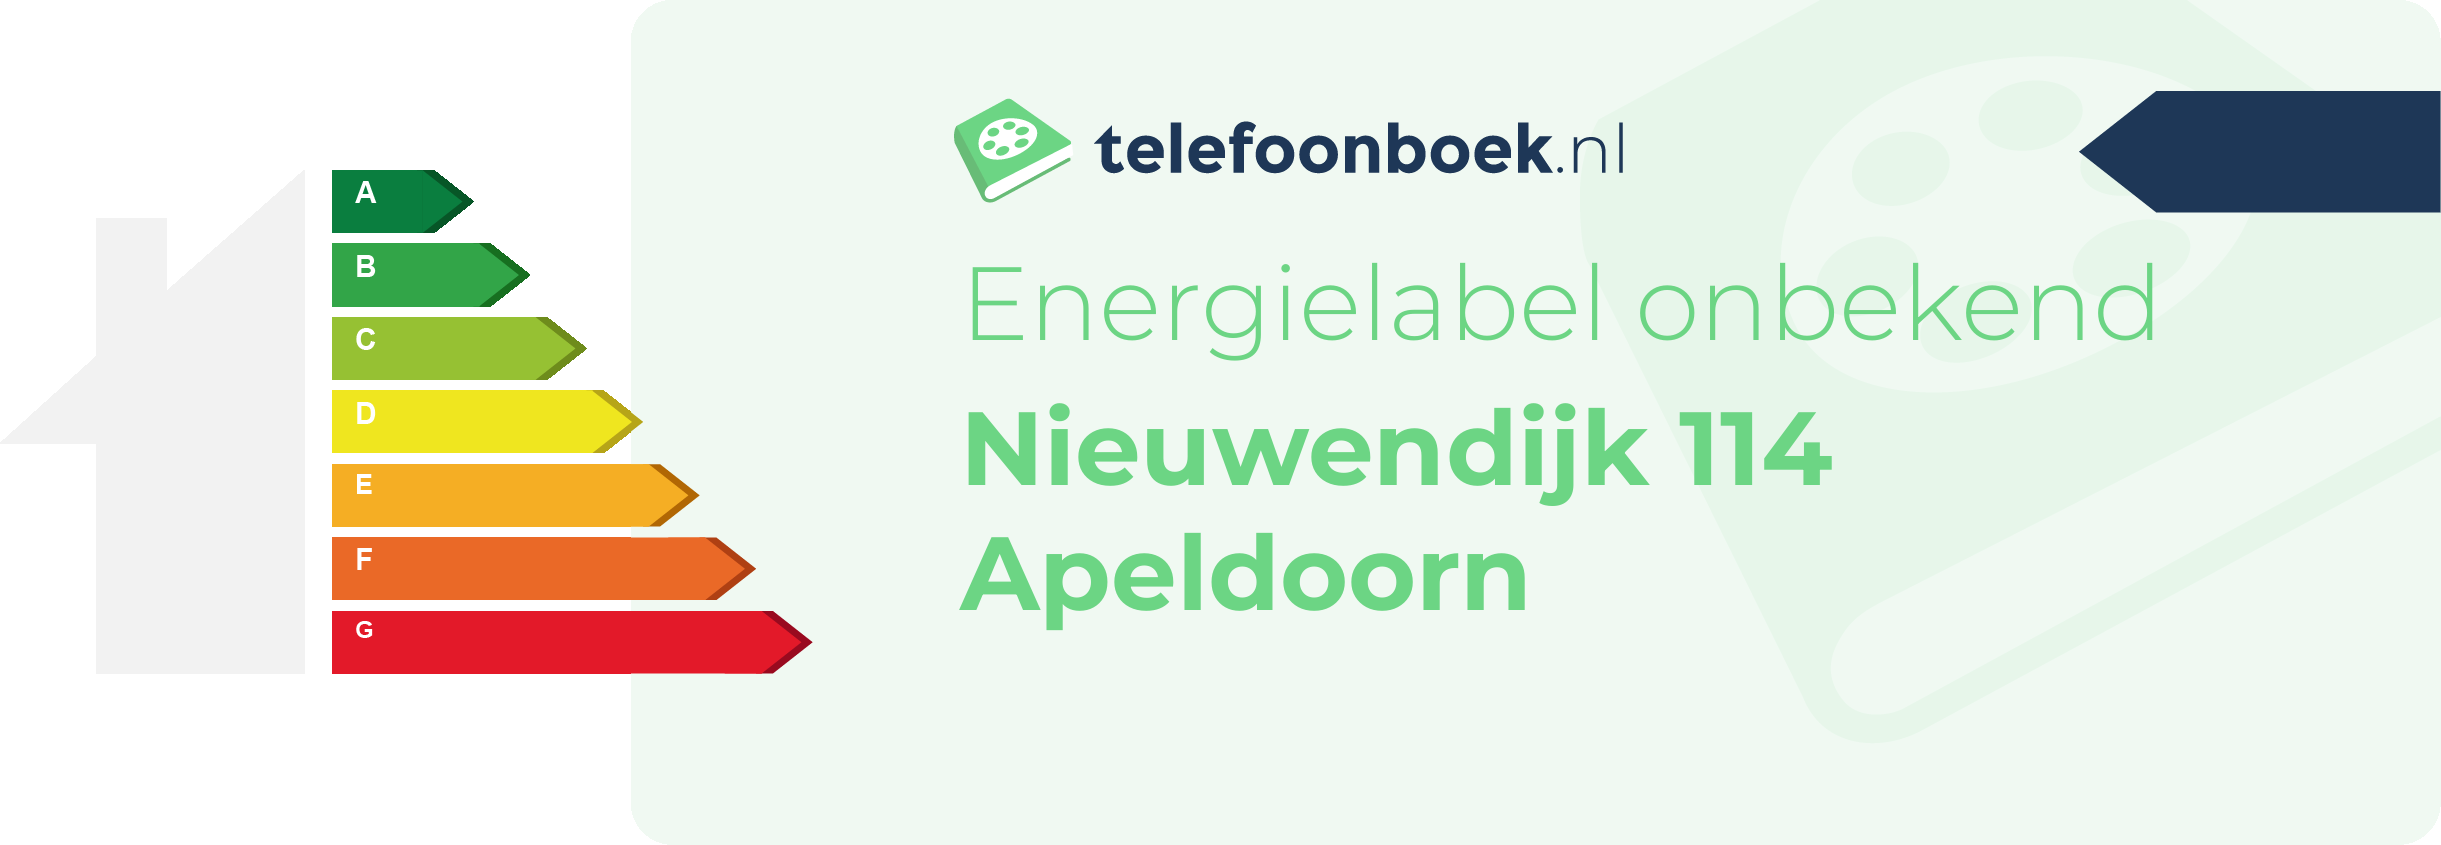 Energielabel Nieuwendijk 114 Apeldoorn